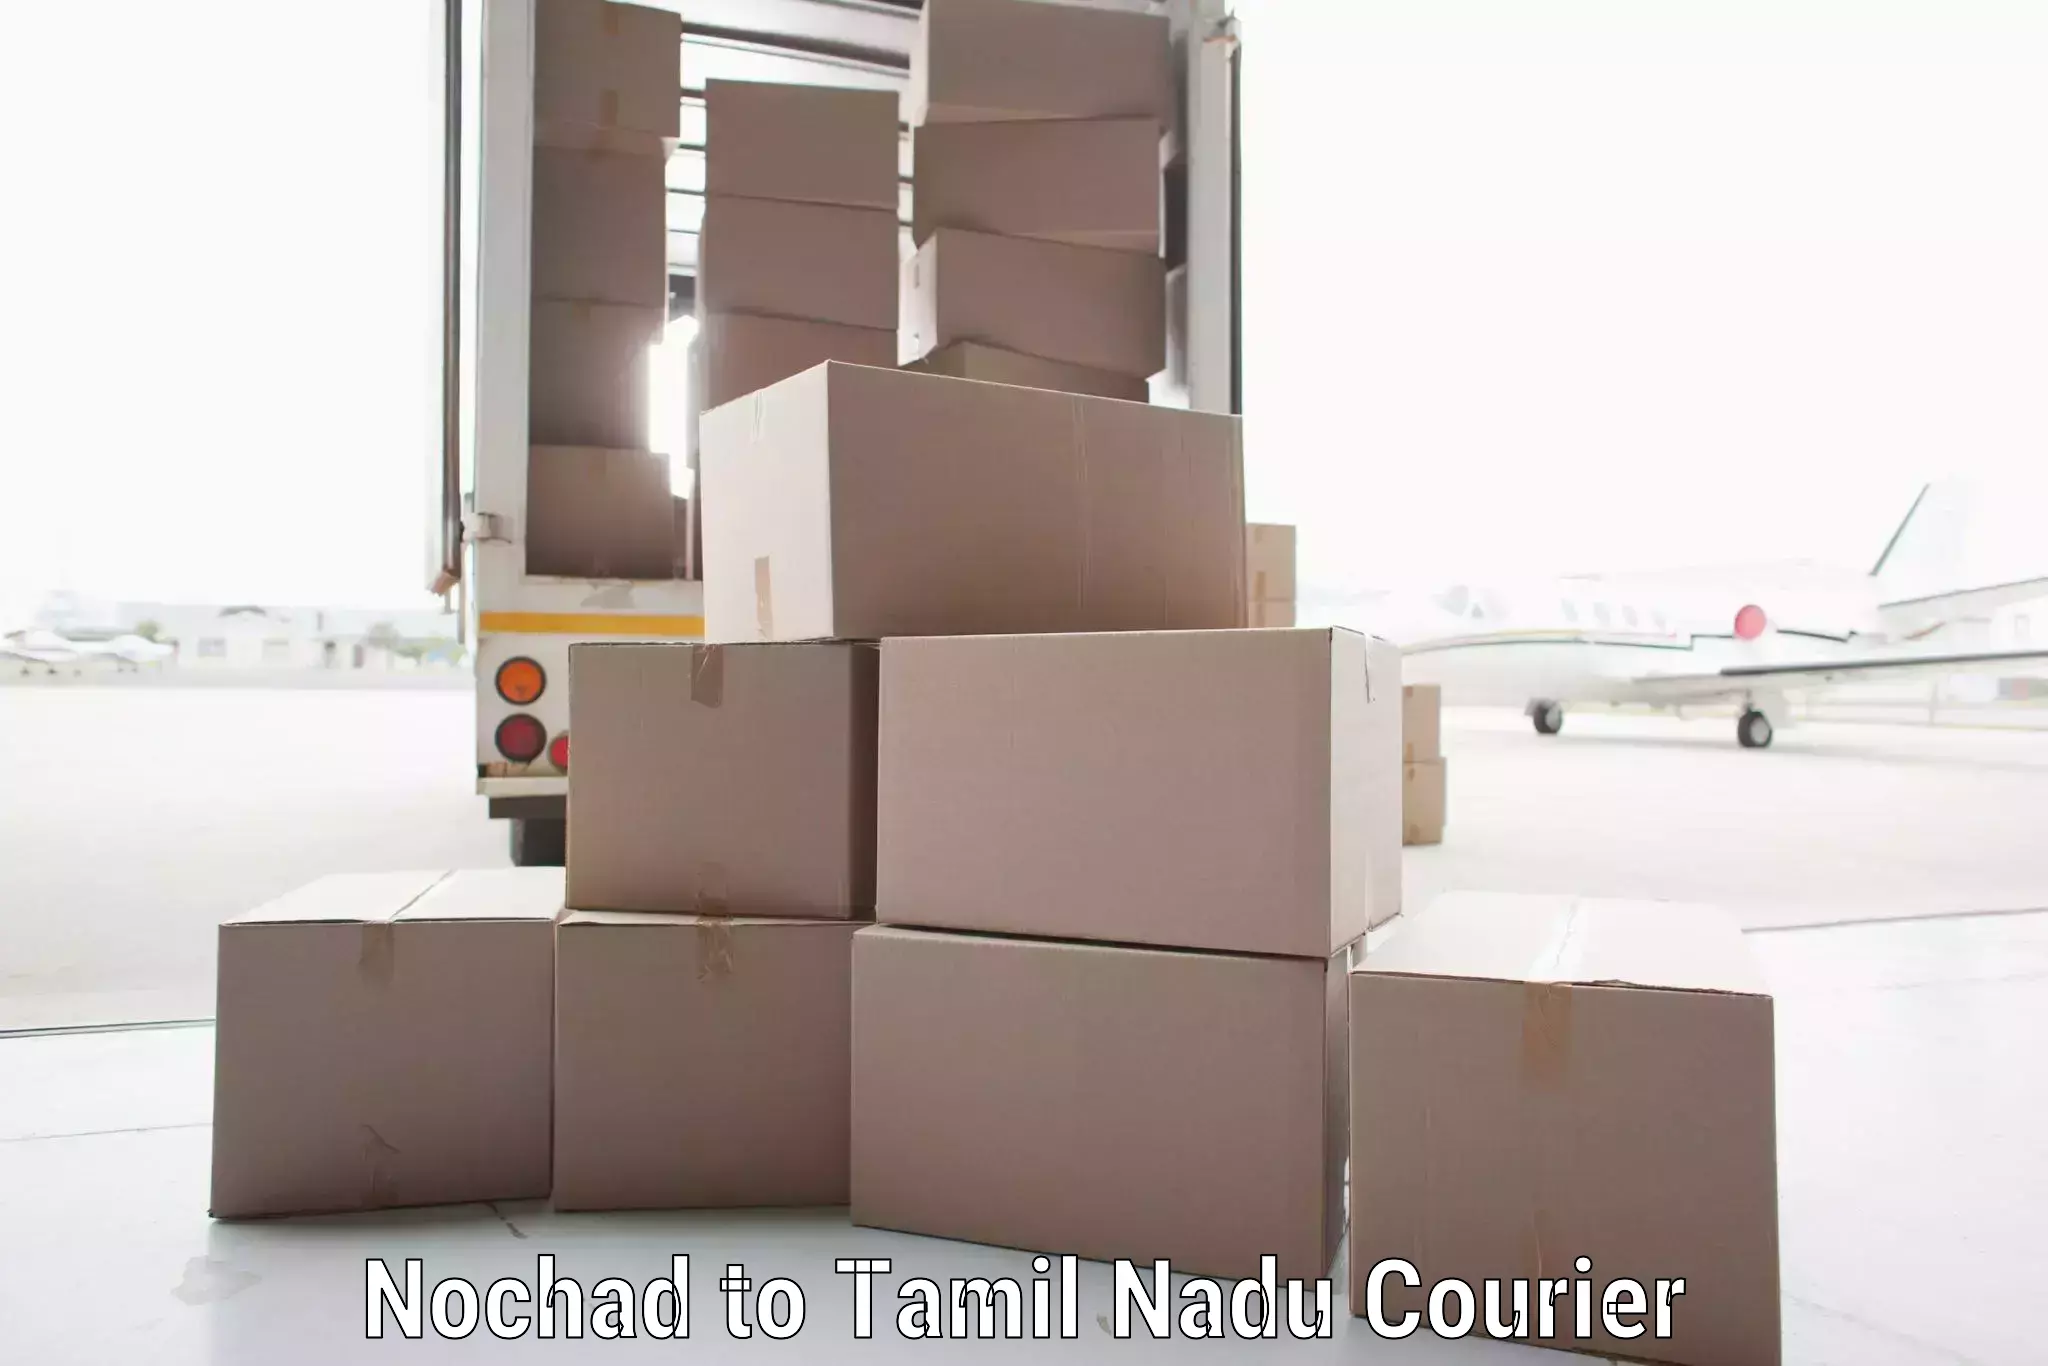 Rural area delivery Nochad to Cuddalore